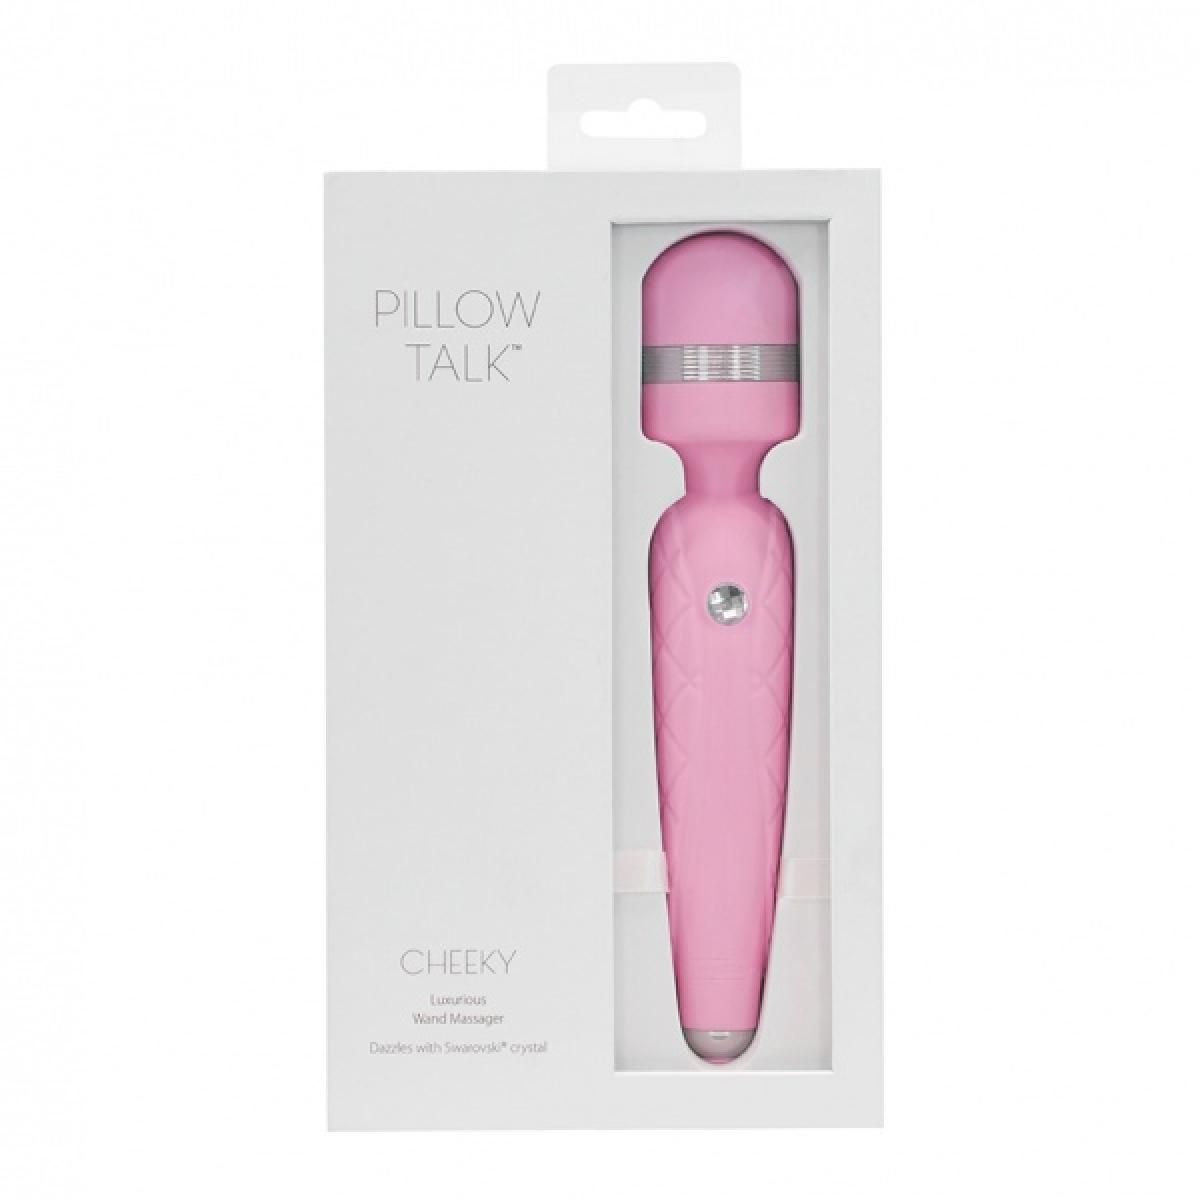 Rose Talk Wand Cheeky Vibrator PILLOW - TALK Pillow wand-massager